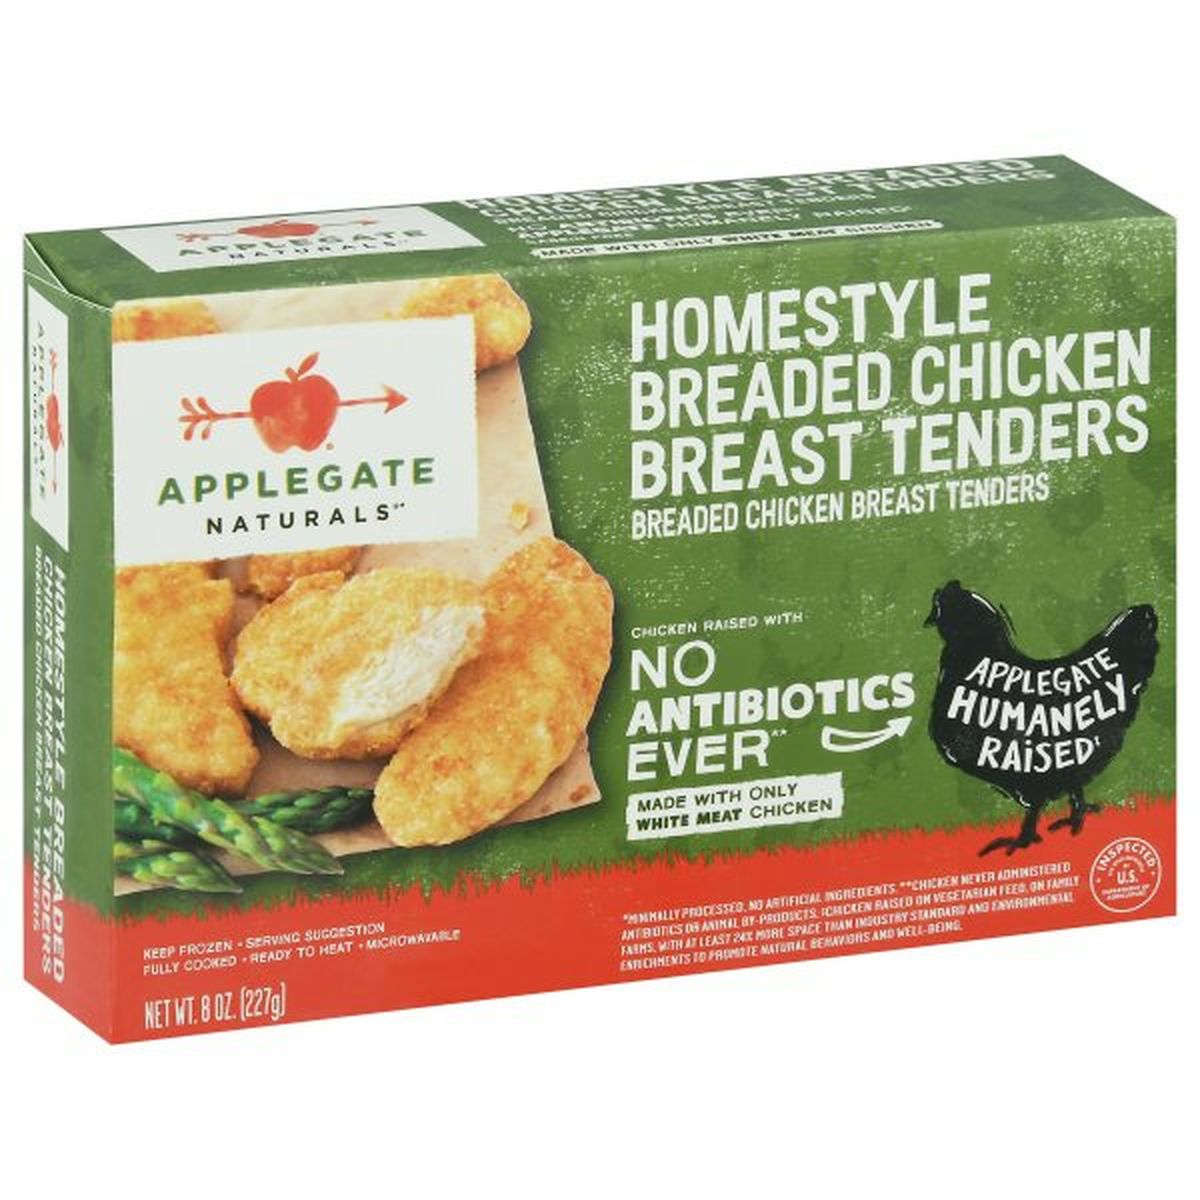 Calories in Applegate Chicken Breast Tenders, Breaded, Homestyle